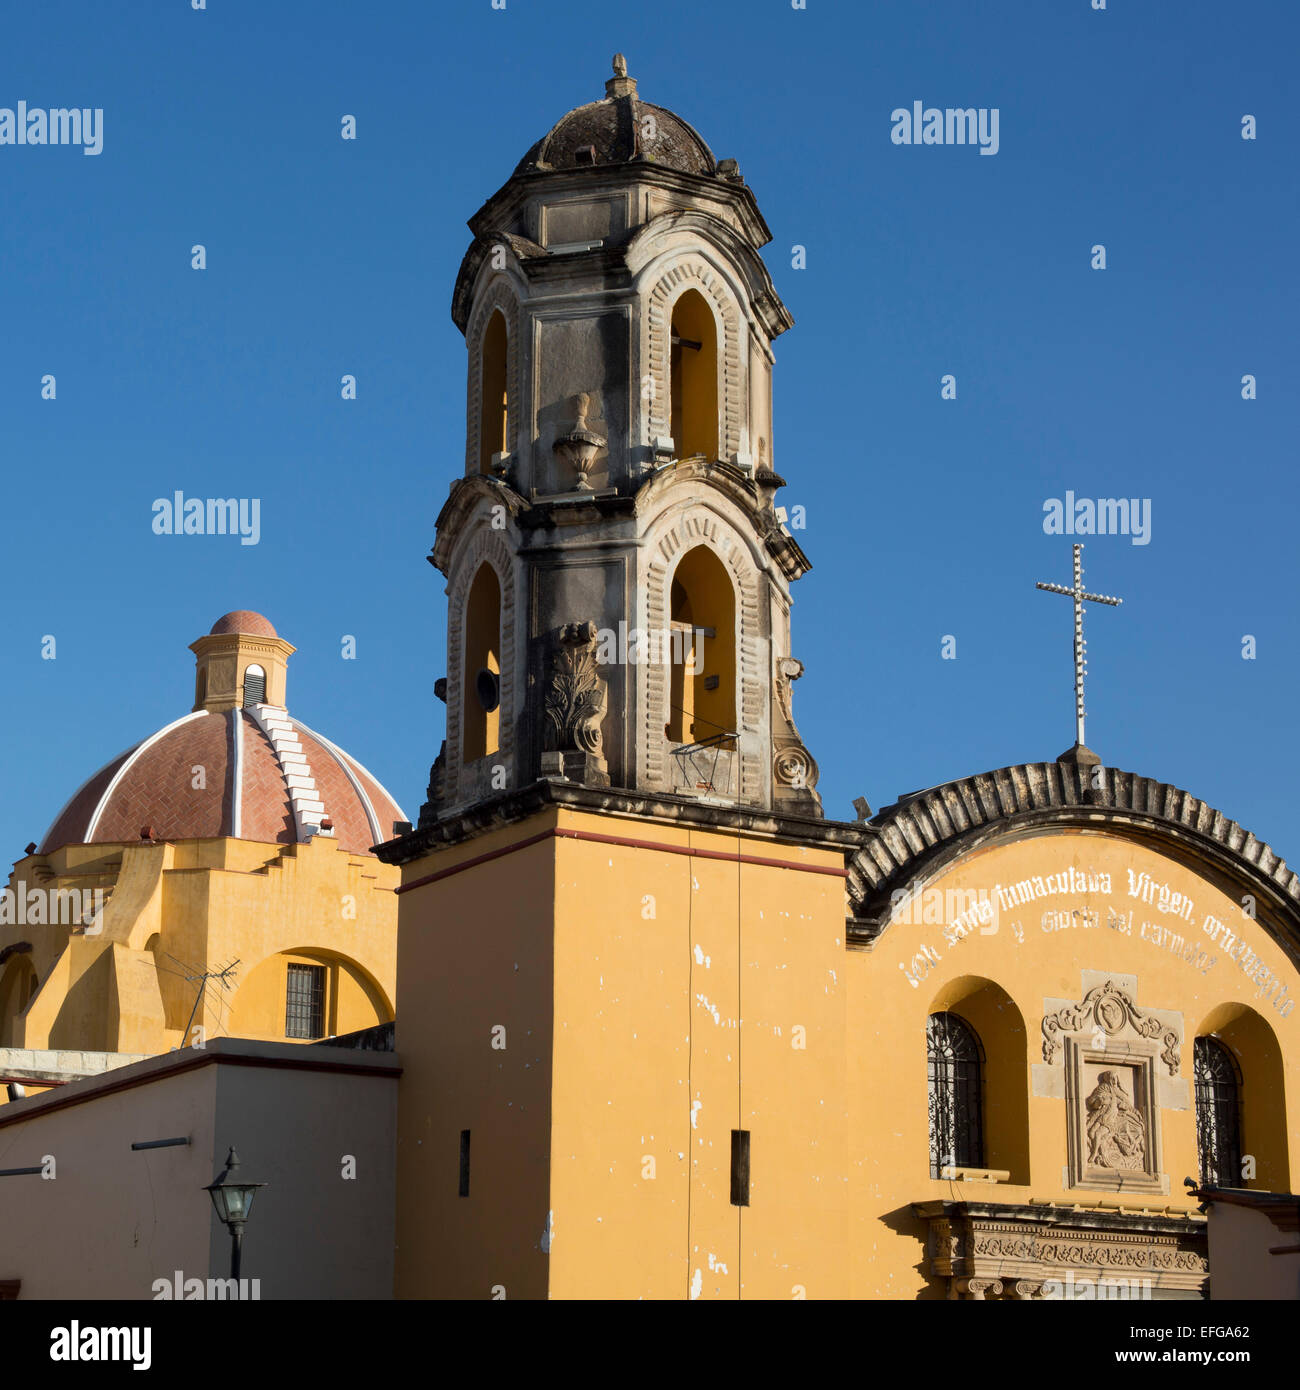 Oaxaca, Mexico - Carmen de Abajo Catholic church. Stock Photo